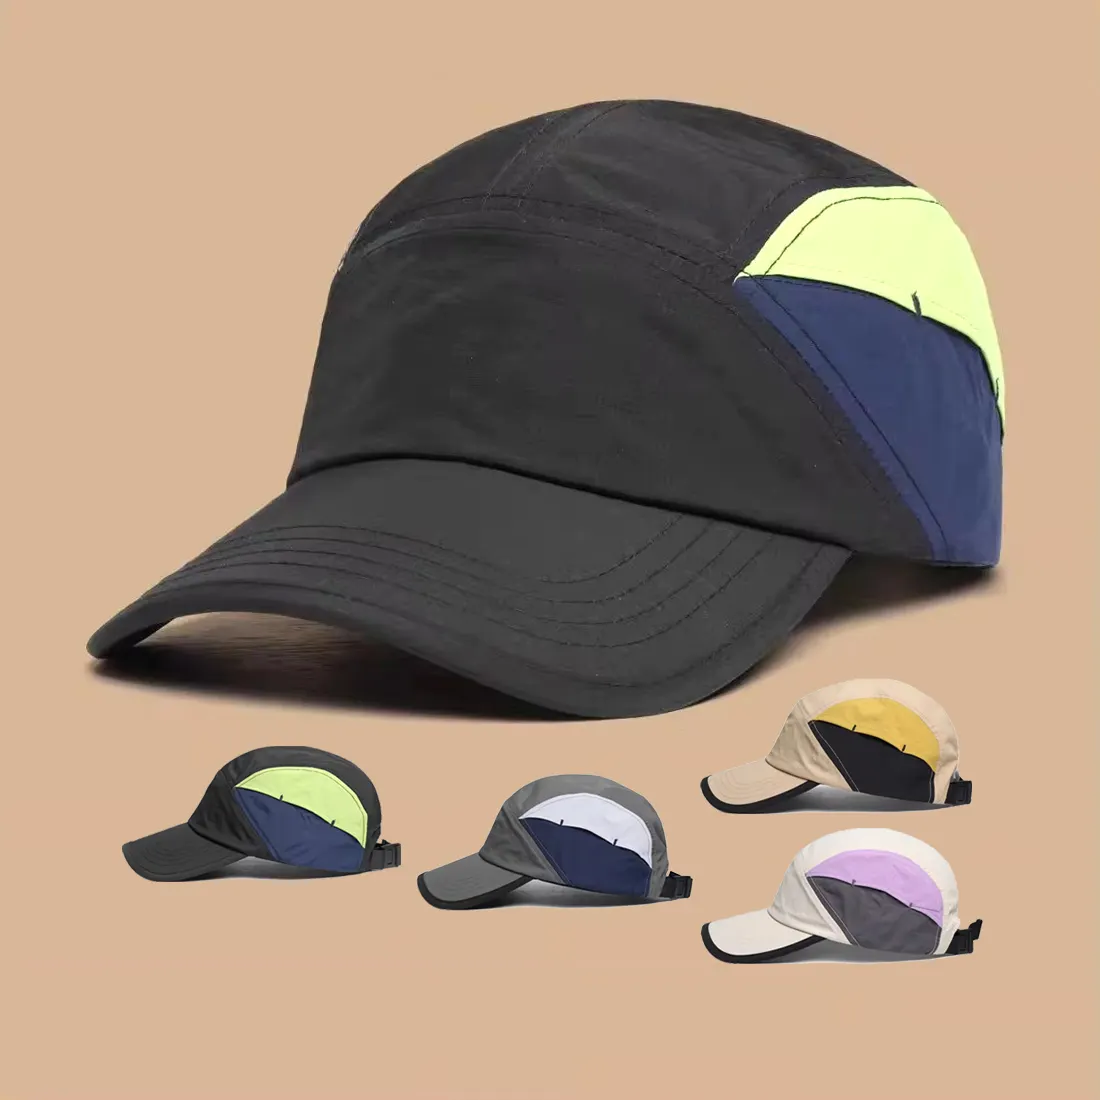 La más nueva moda multicolor deporte gorra de béisbol Unisex ajustable al aire libre protección solar camionero sombrero Retro campamento gorra para Mujeres Hombres